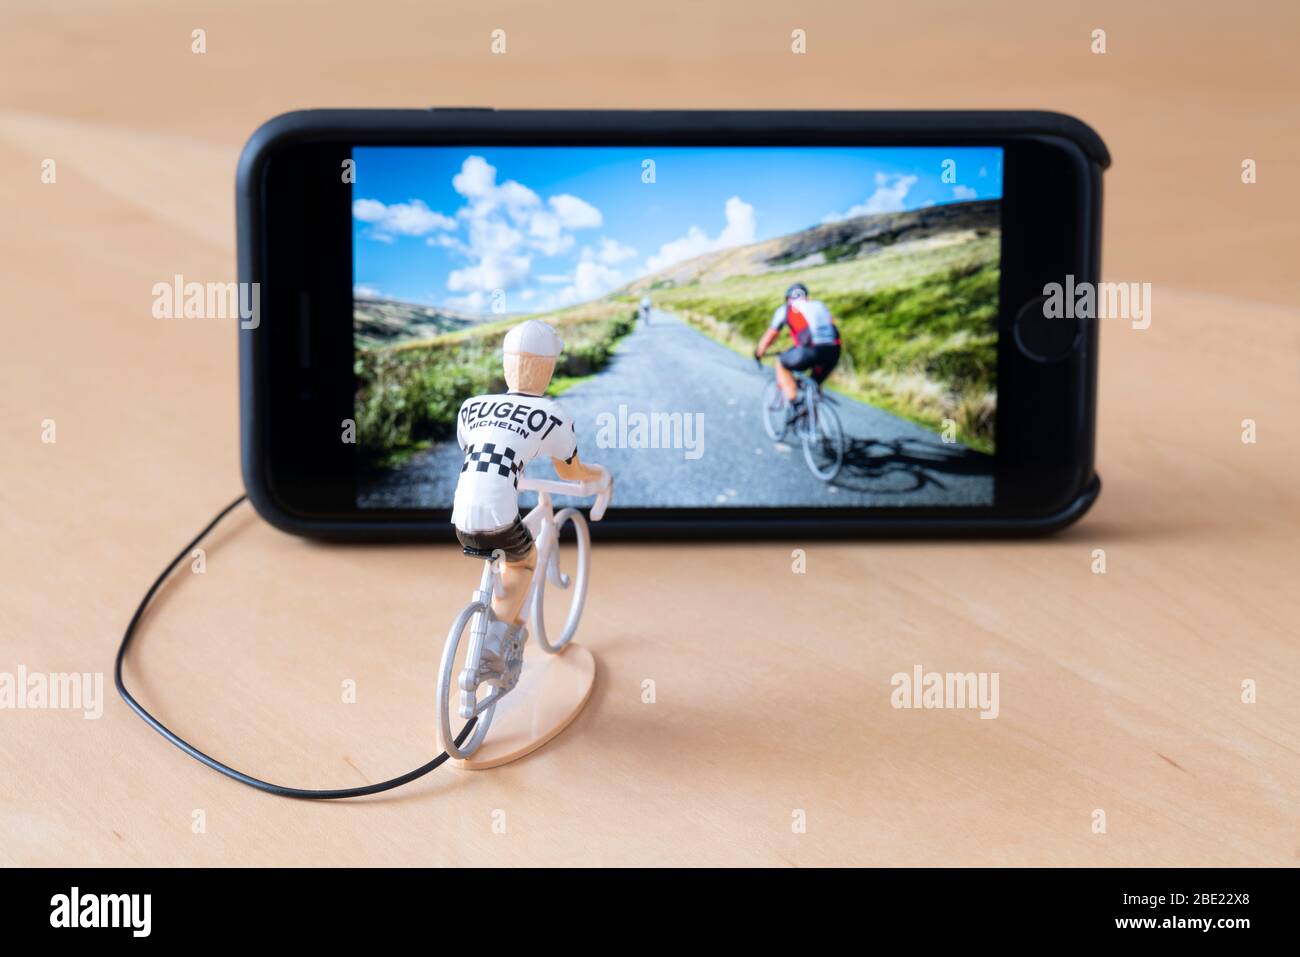 Mini ciclisti figure indoor training con l'aiuto di un iPhone. Foto Stock